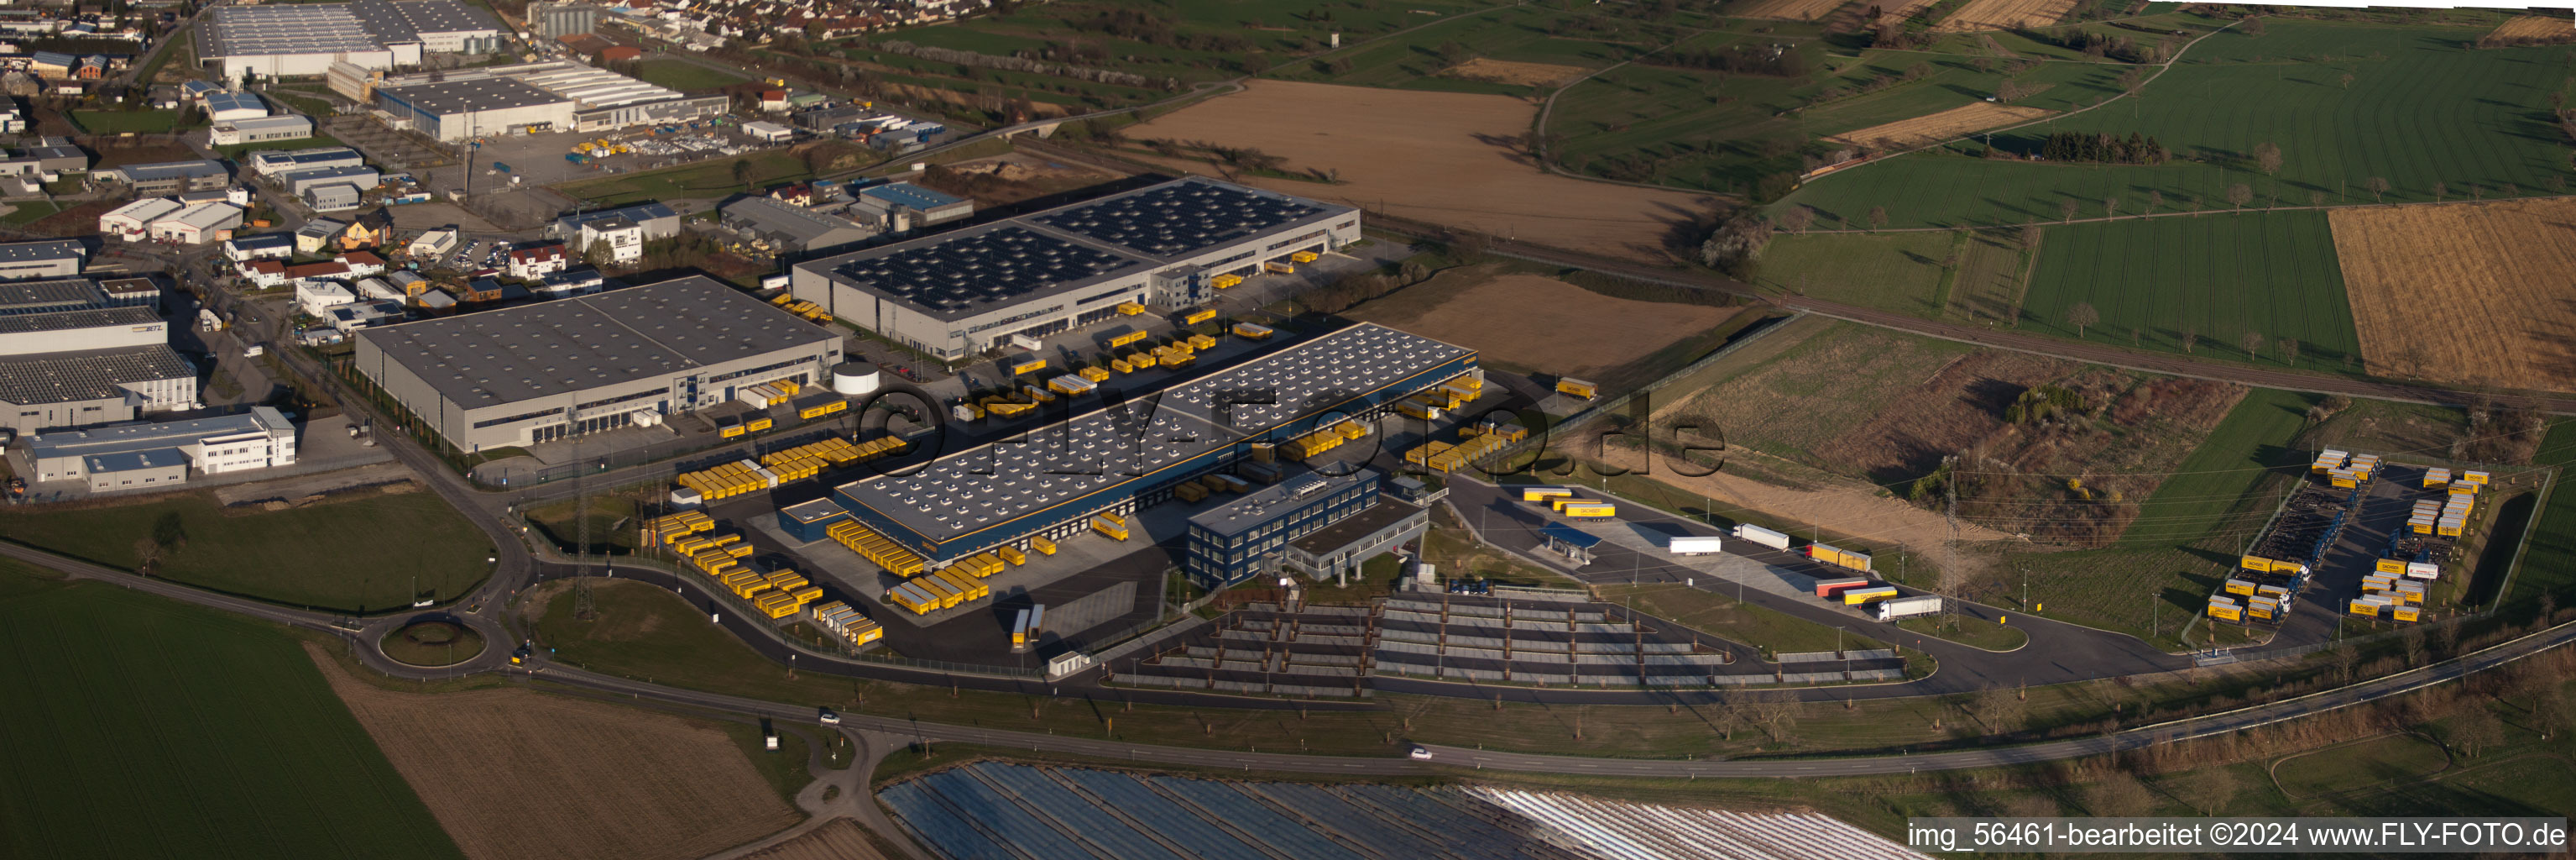 Vue aérienne de Panorama - perspective des entrepôts et des bâtiments de la société maritime de Dachser GmbH & Co.KG à Malsch dans le département Bade-Wurtemberg, Allemagne